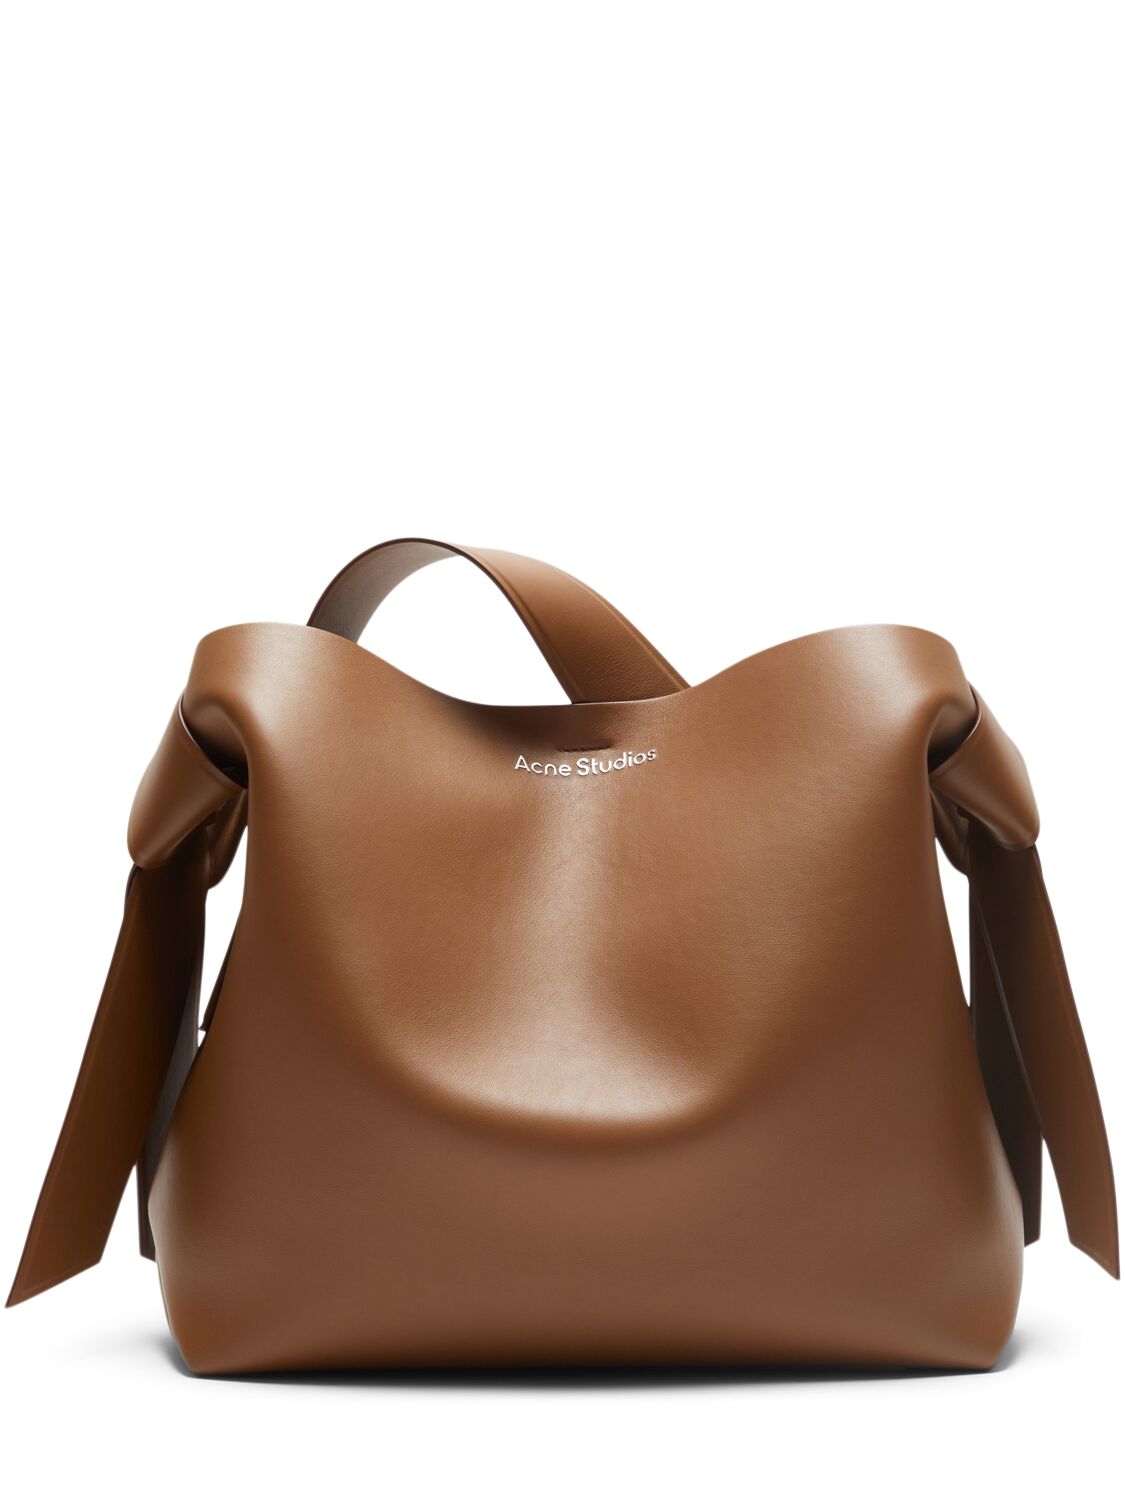 Acne Studios Midi Musubi Leather Tote Bag In Camel Brown